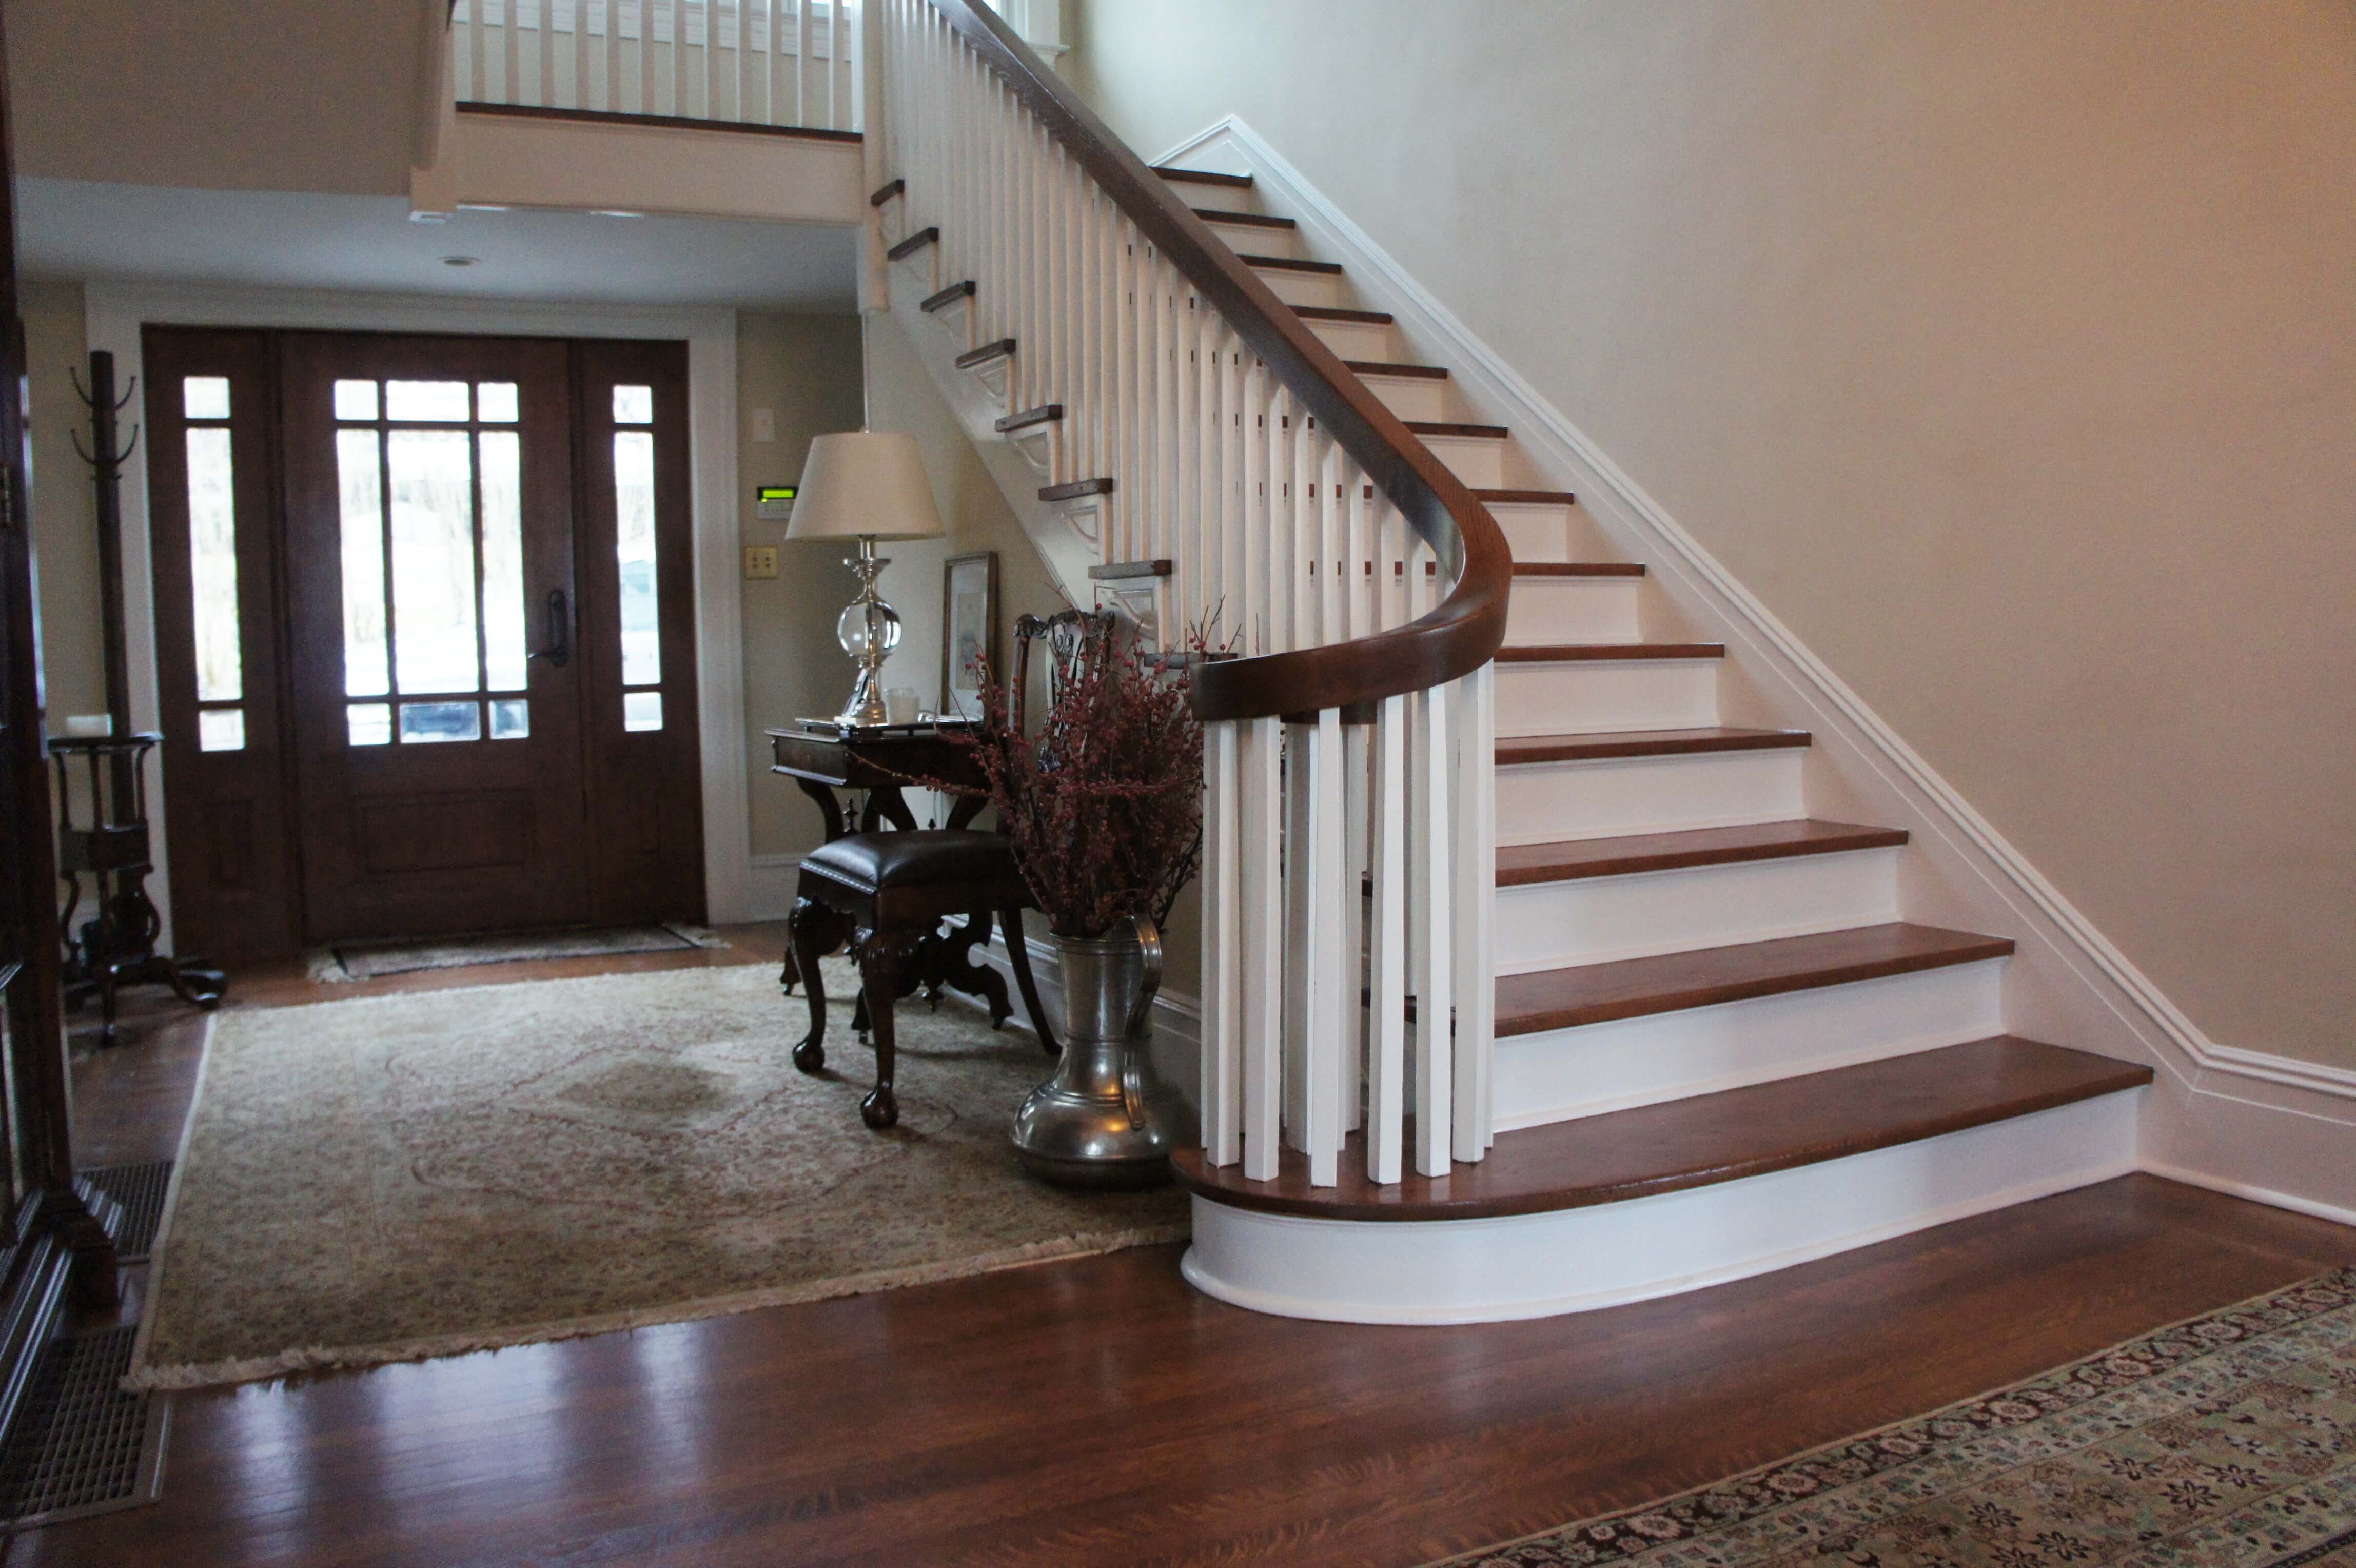 Handrail Repair Refinishing Replacement, Refinishing Hardwood Floors Stairs